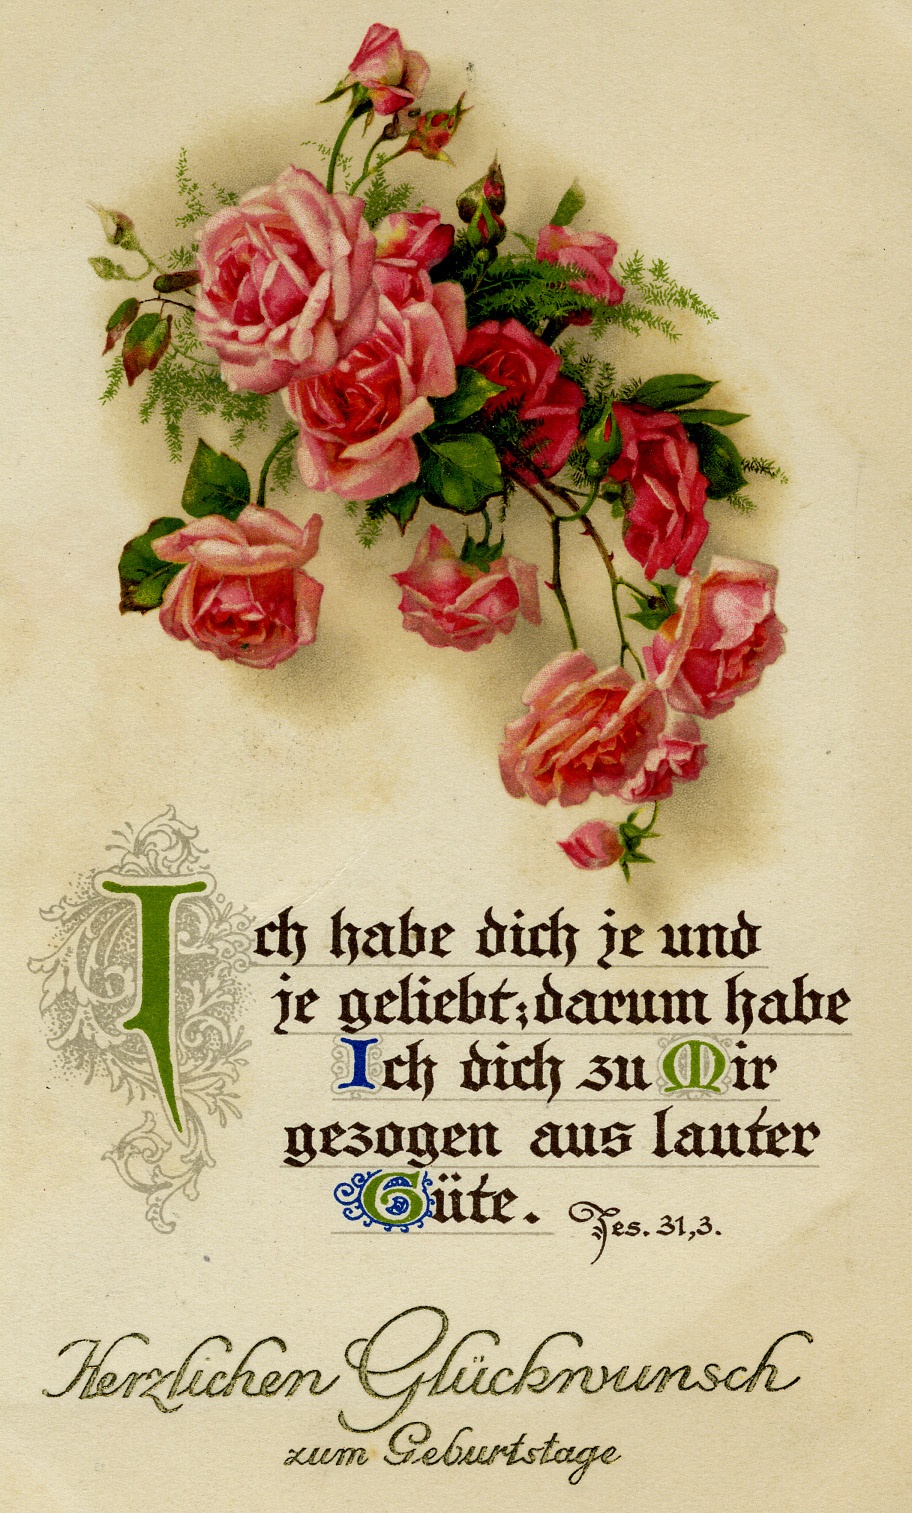 Geburtstagskarte (Historisches Museum der Pfalz, Speyer CC BY)